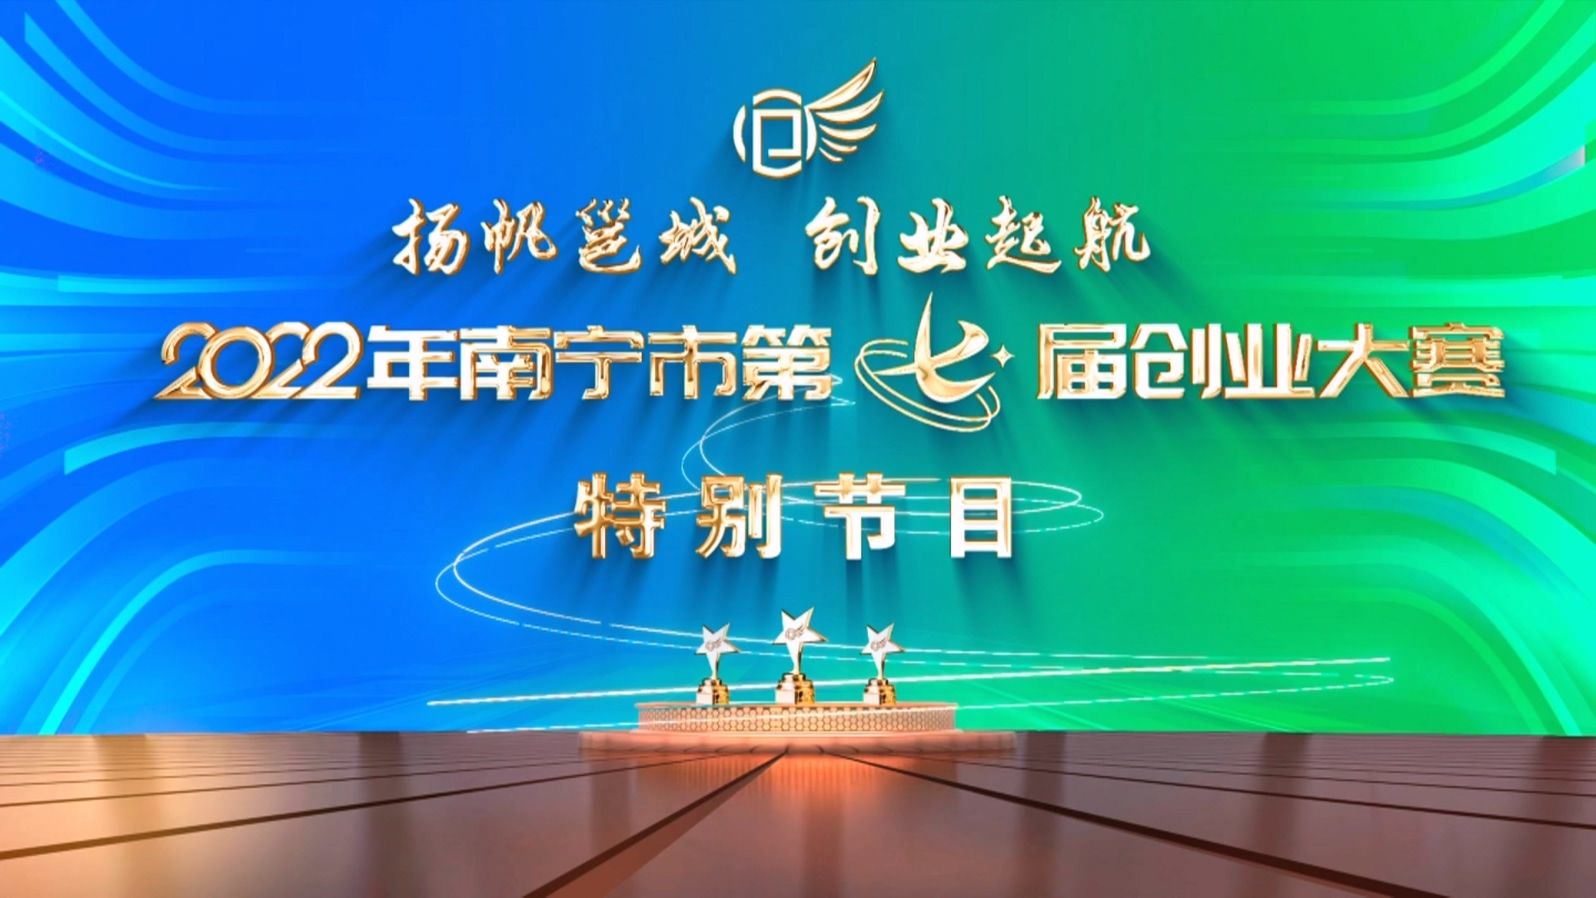 扬帆邕城+创业起航——2022年南宁市第七届创业大赛特别节目